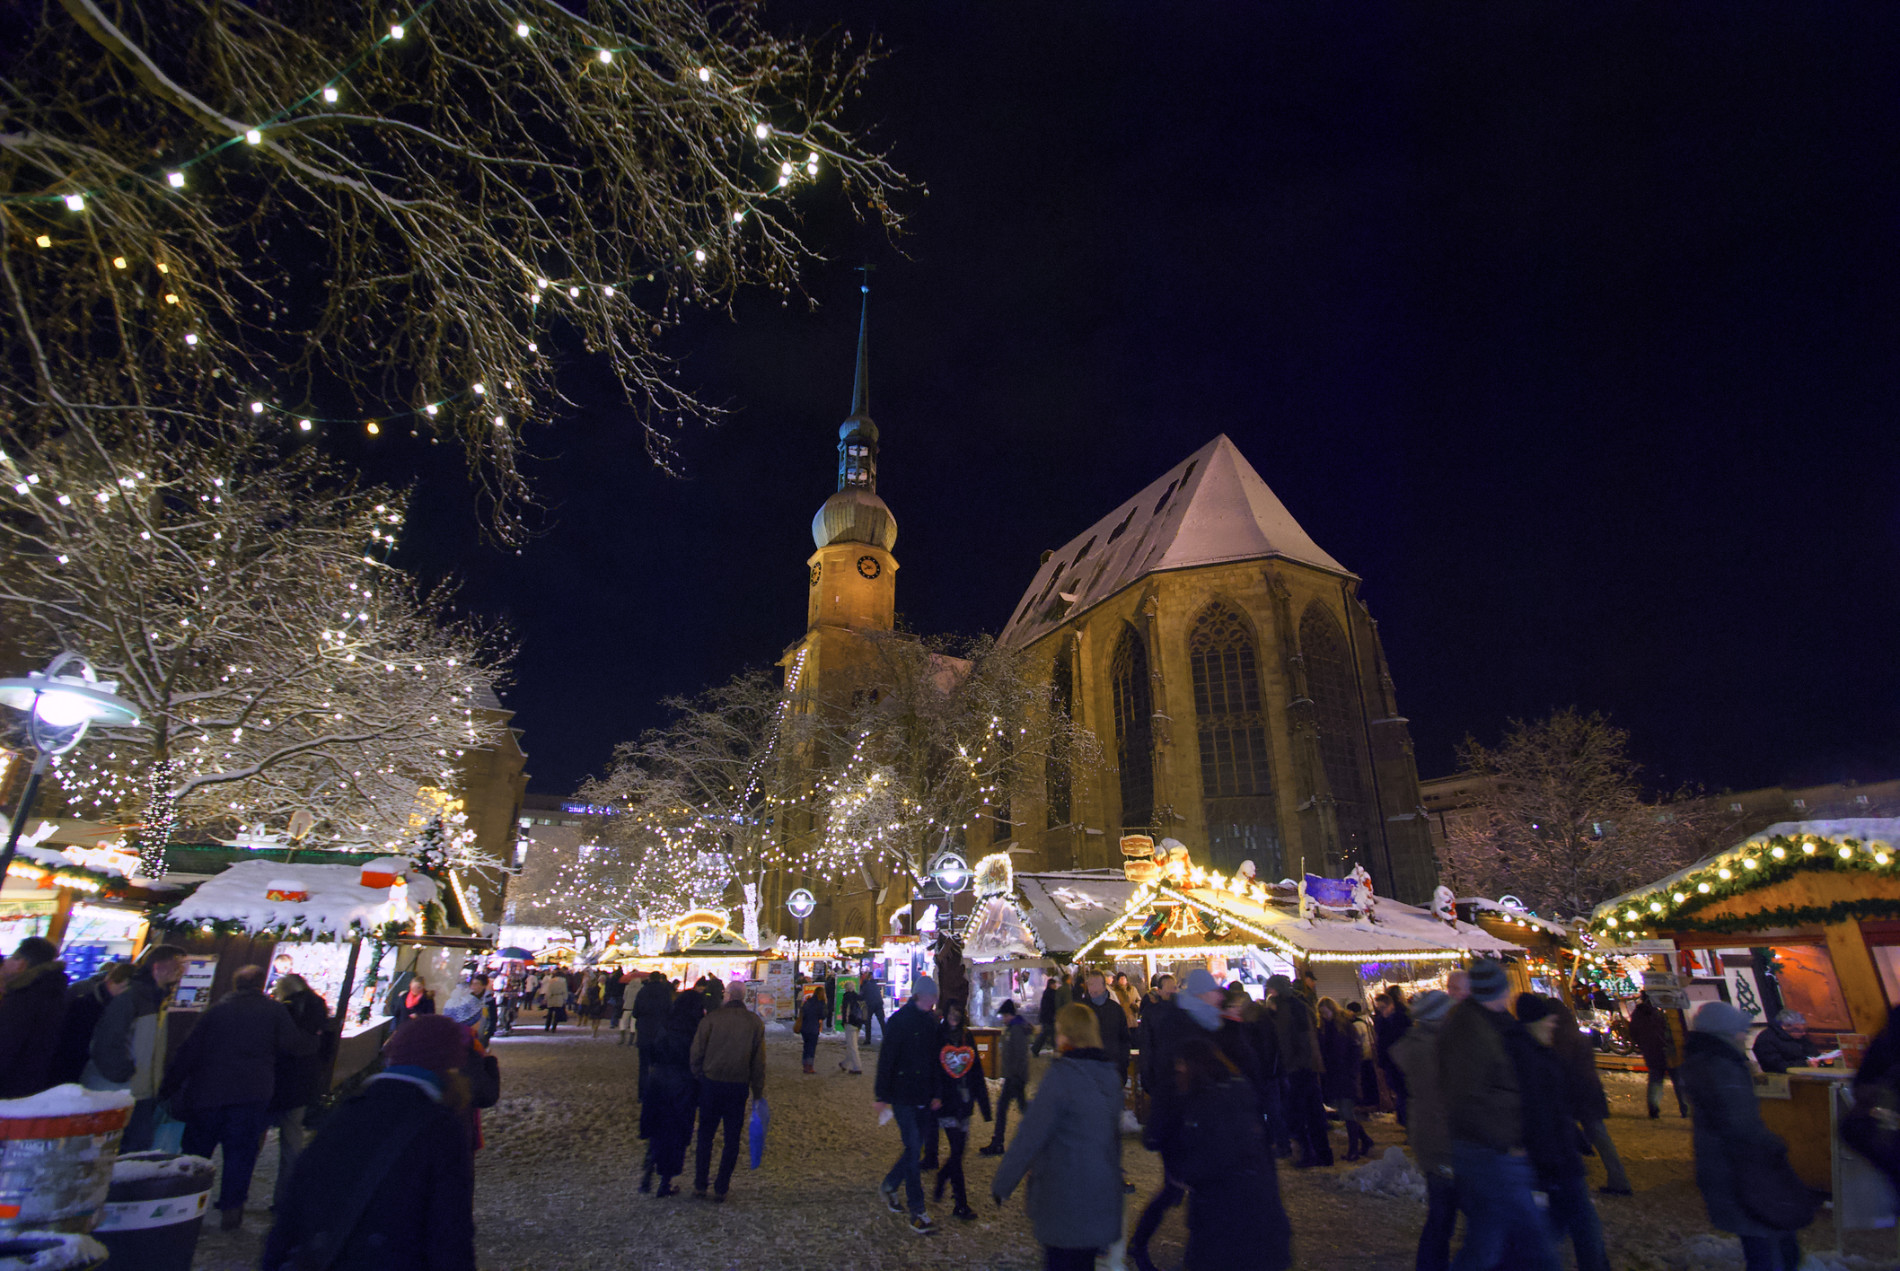 Reinoldikirche Dortmund in winter